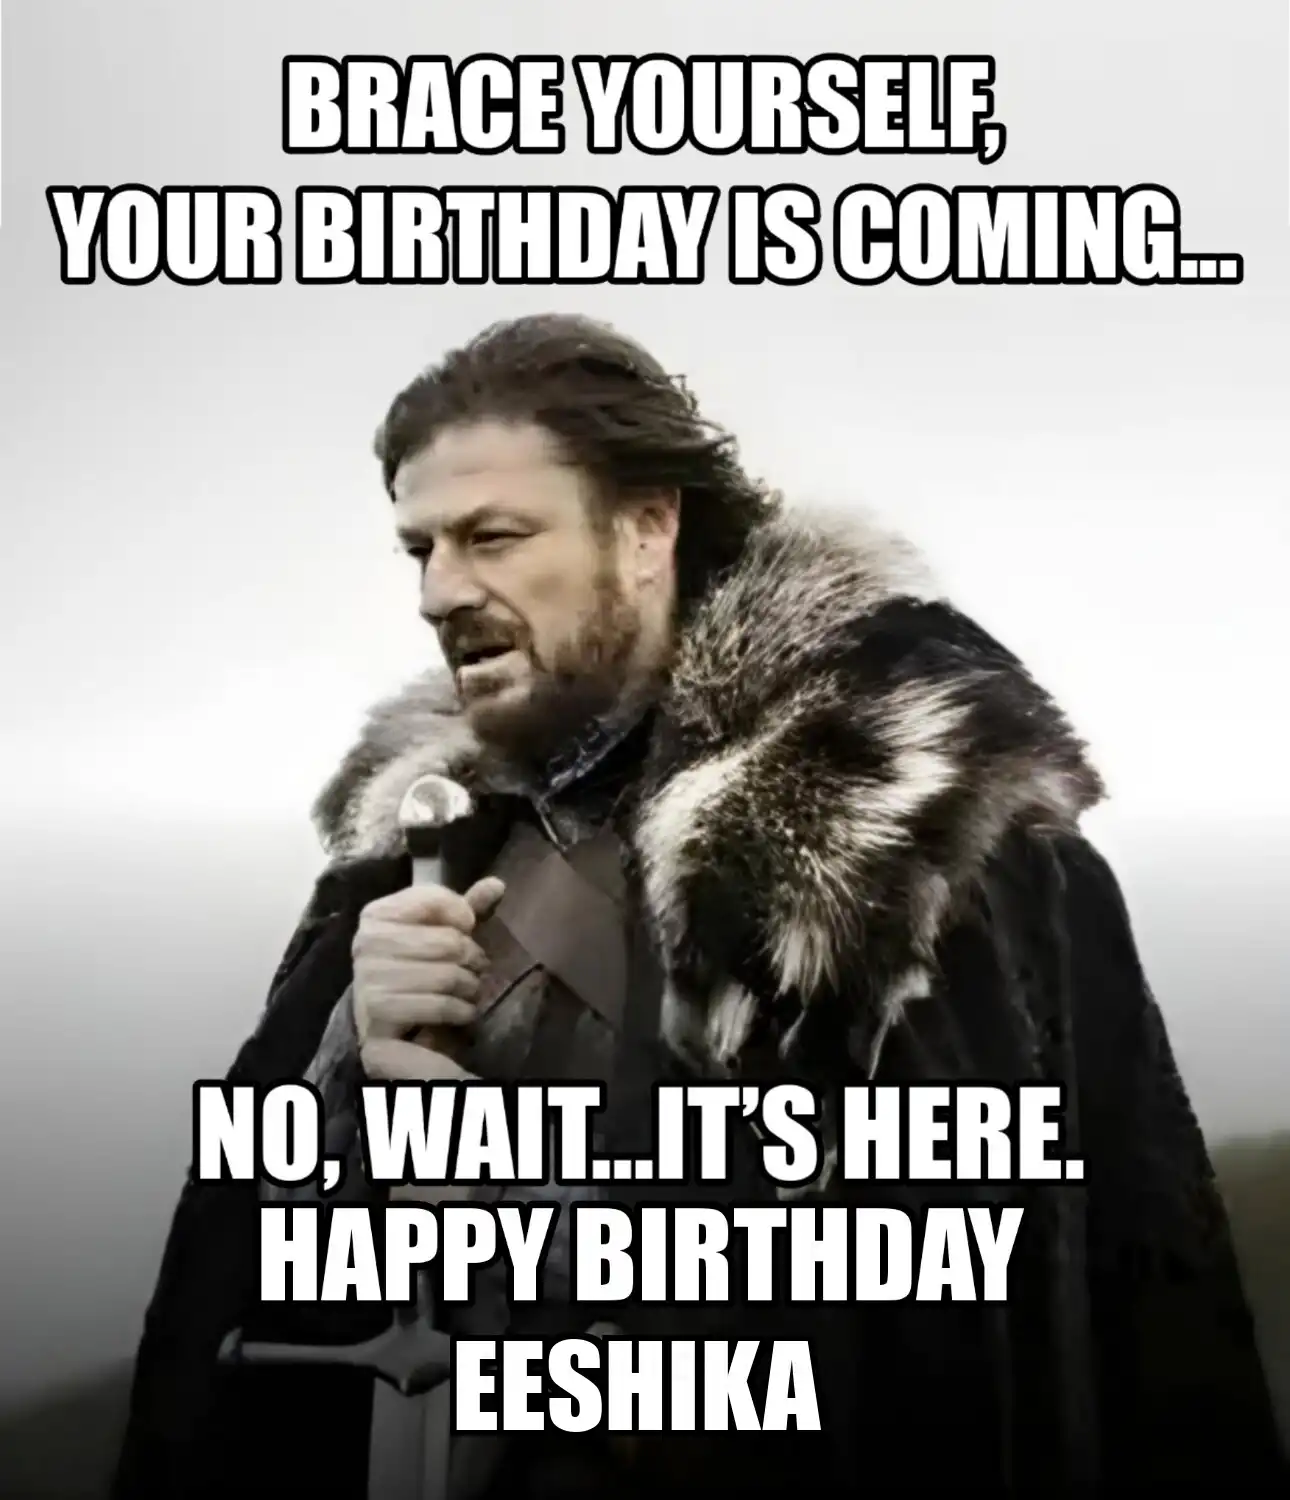 Happy Birthday Eeshika Brace Yourself Your Birthday Is Coming Meme